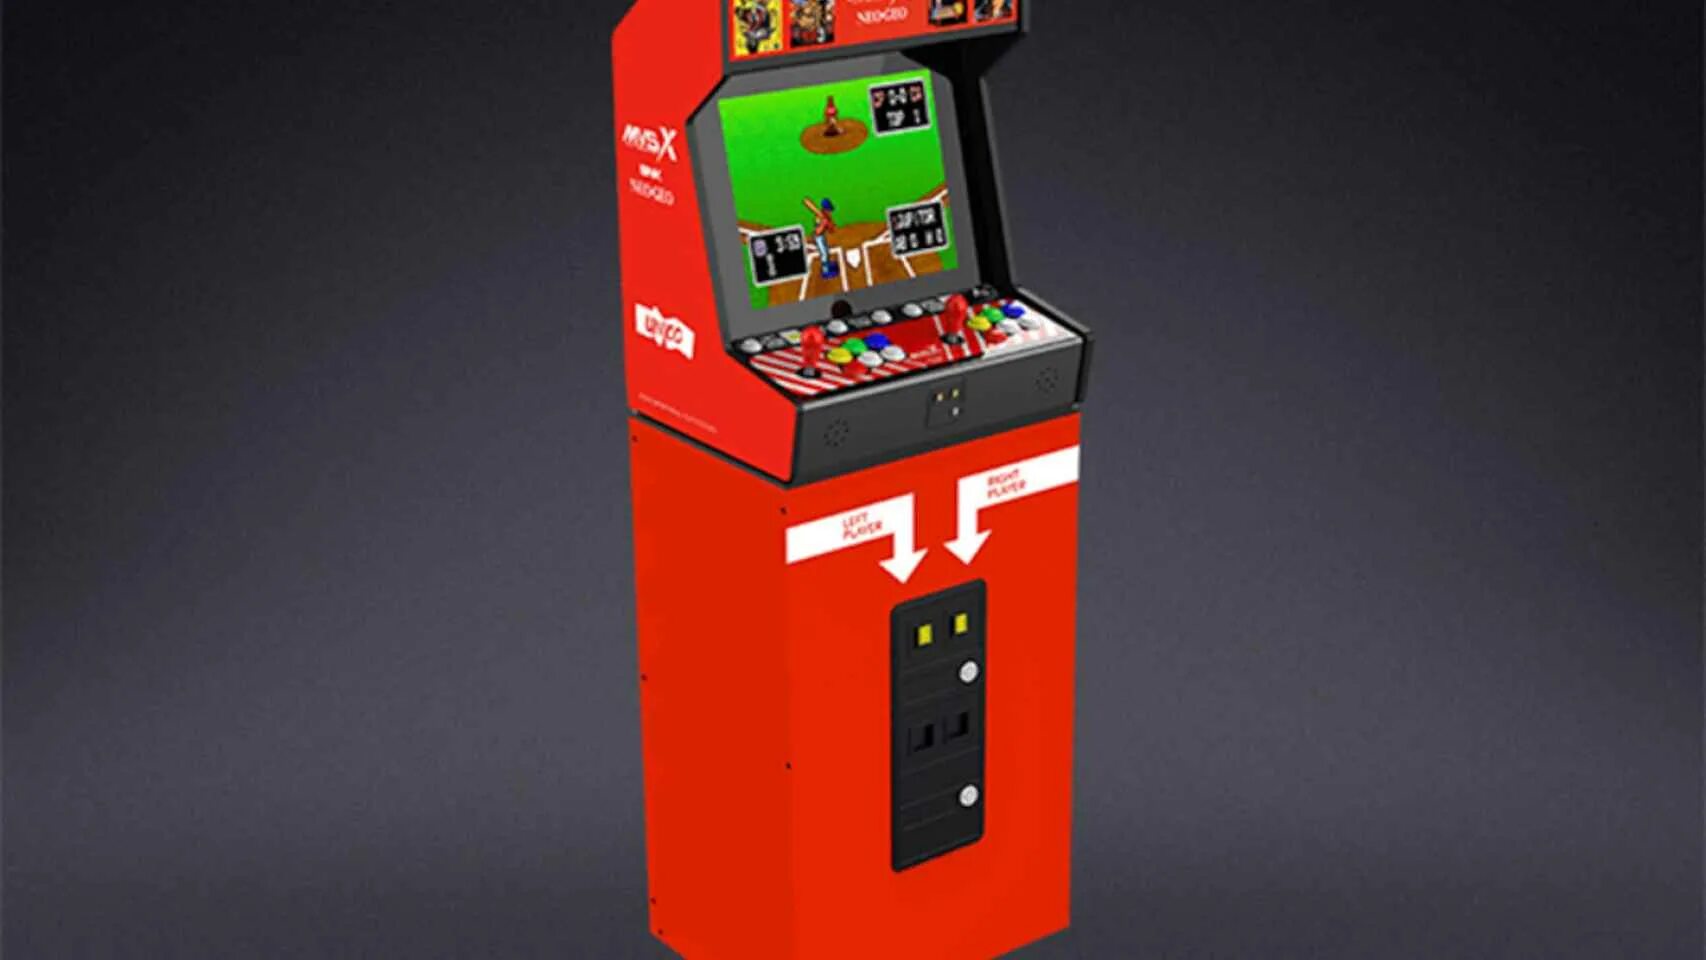 Neo geo автомат. Игровой автомат Neo geo. SNK Neo geo Arcade. Автомат игрушек 2